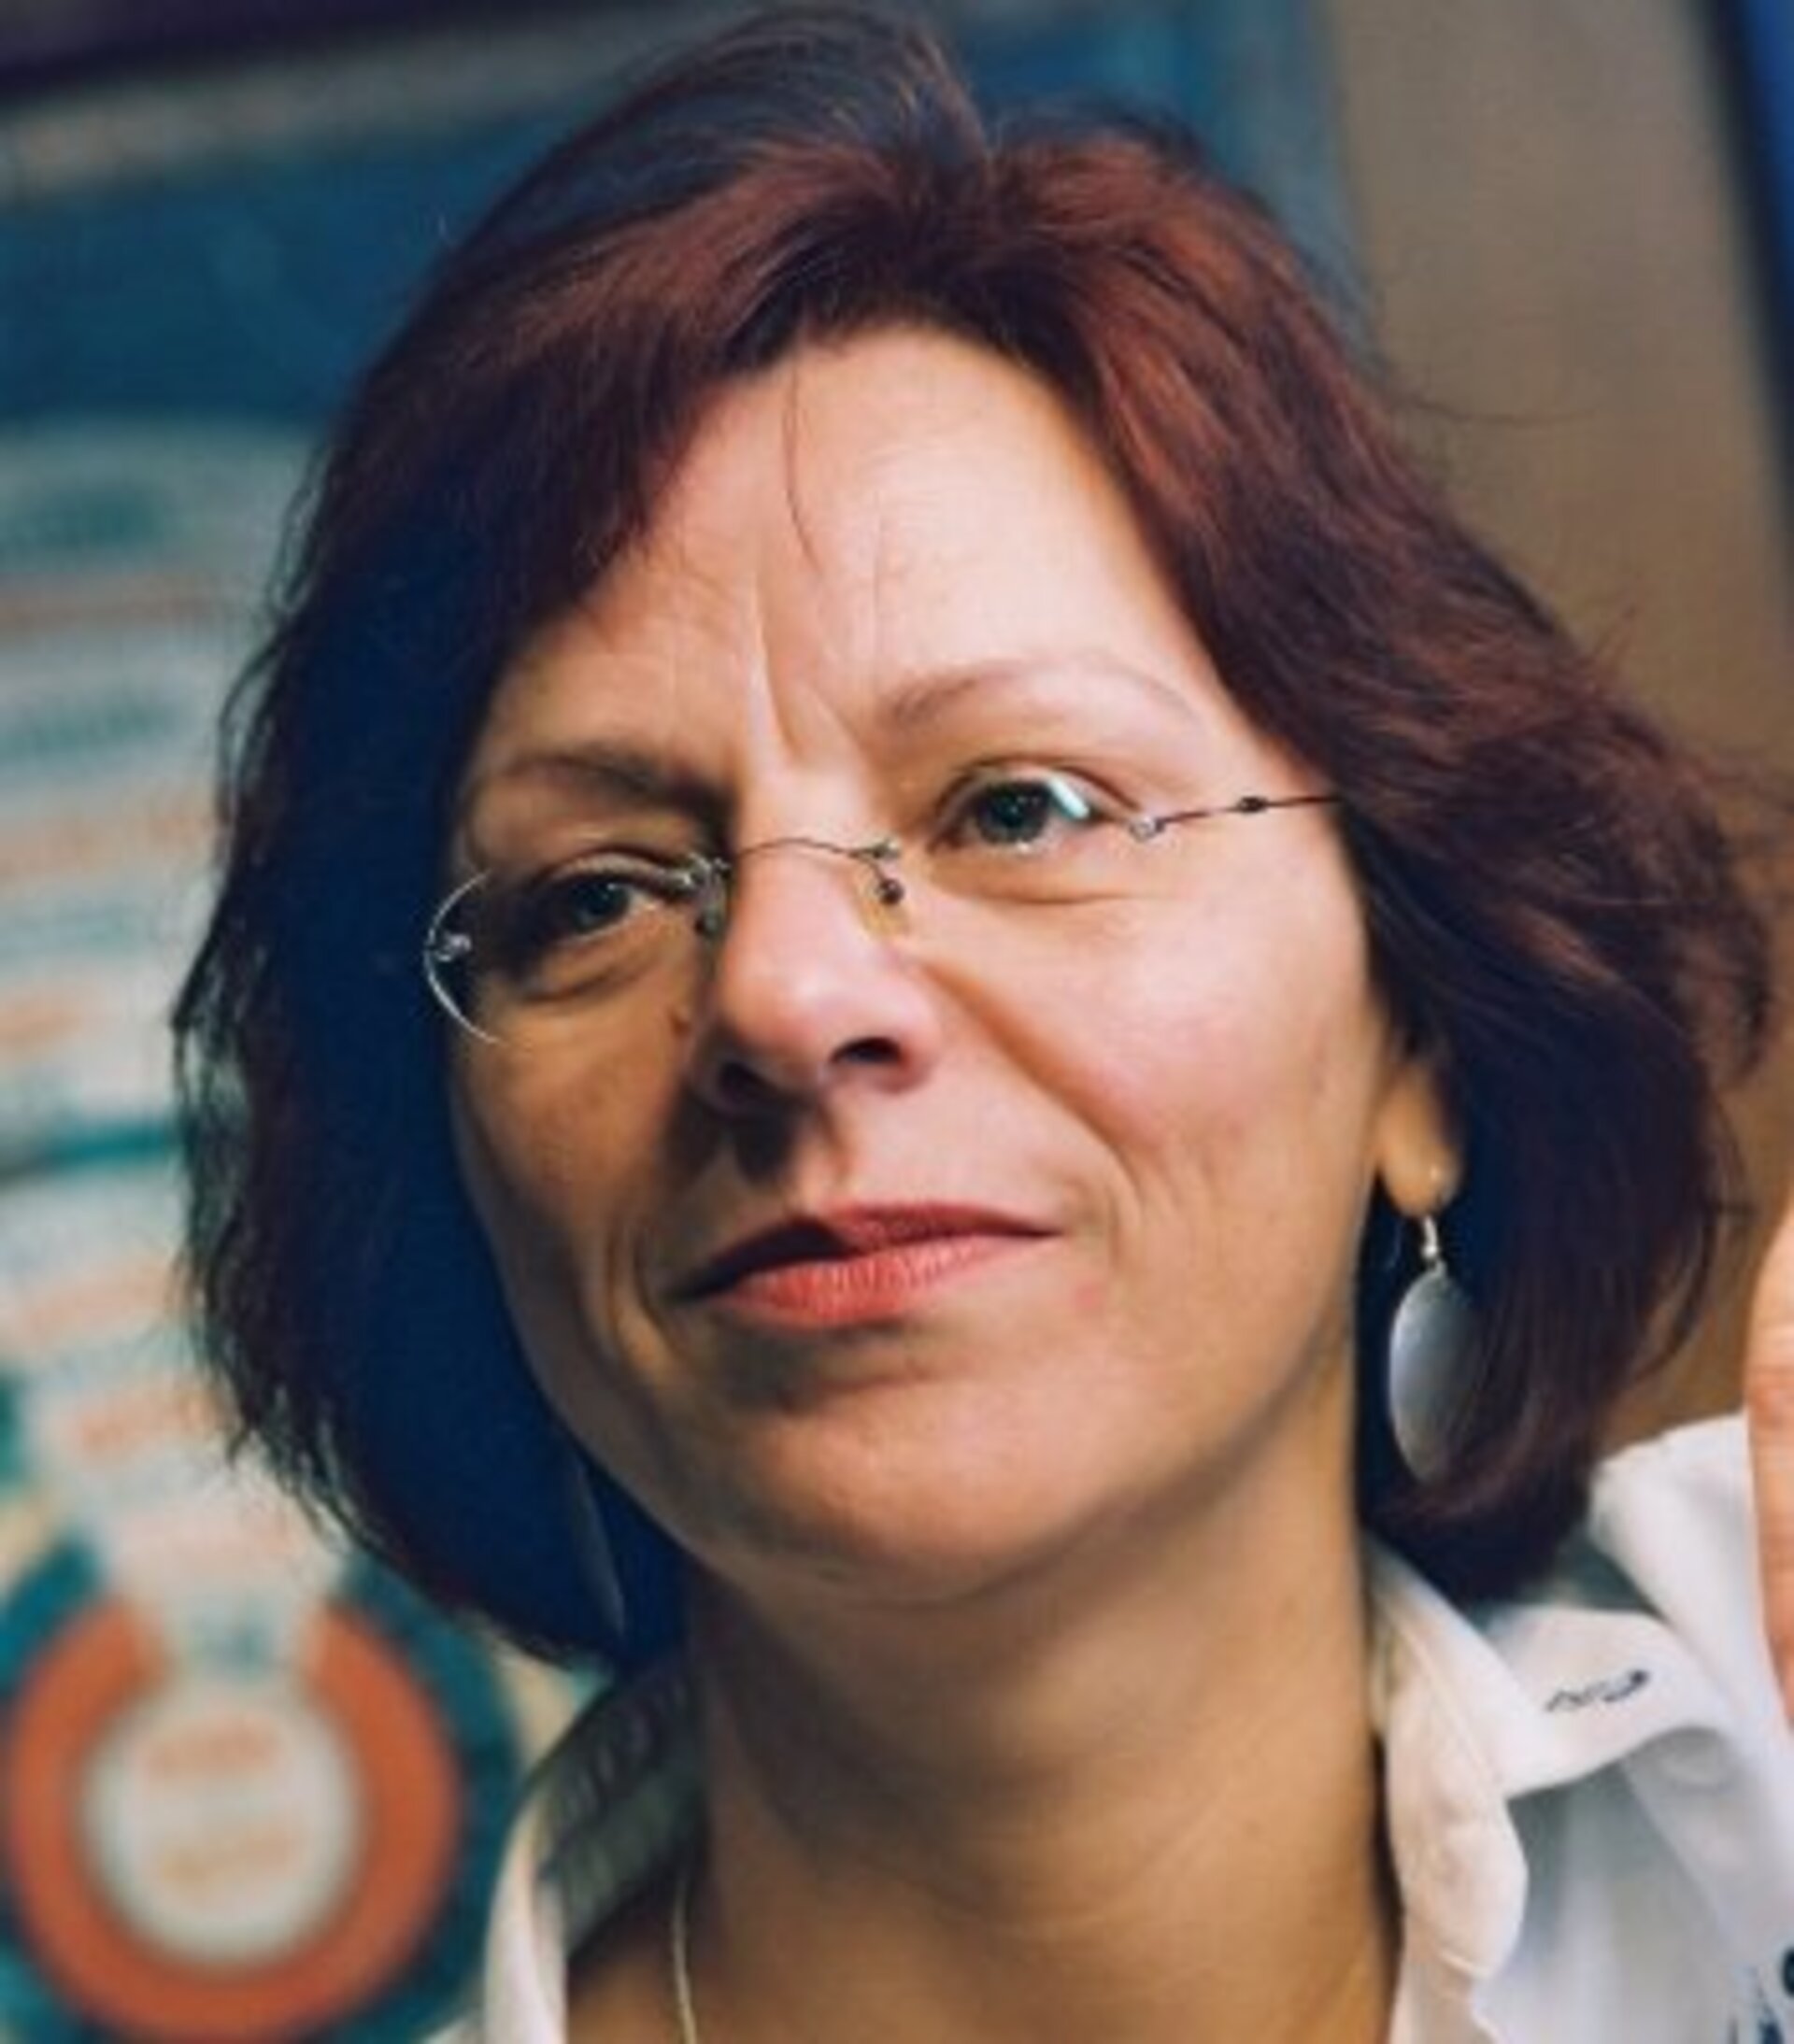 Rita Schulz